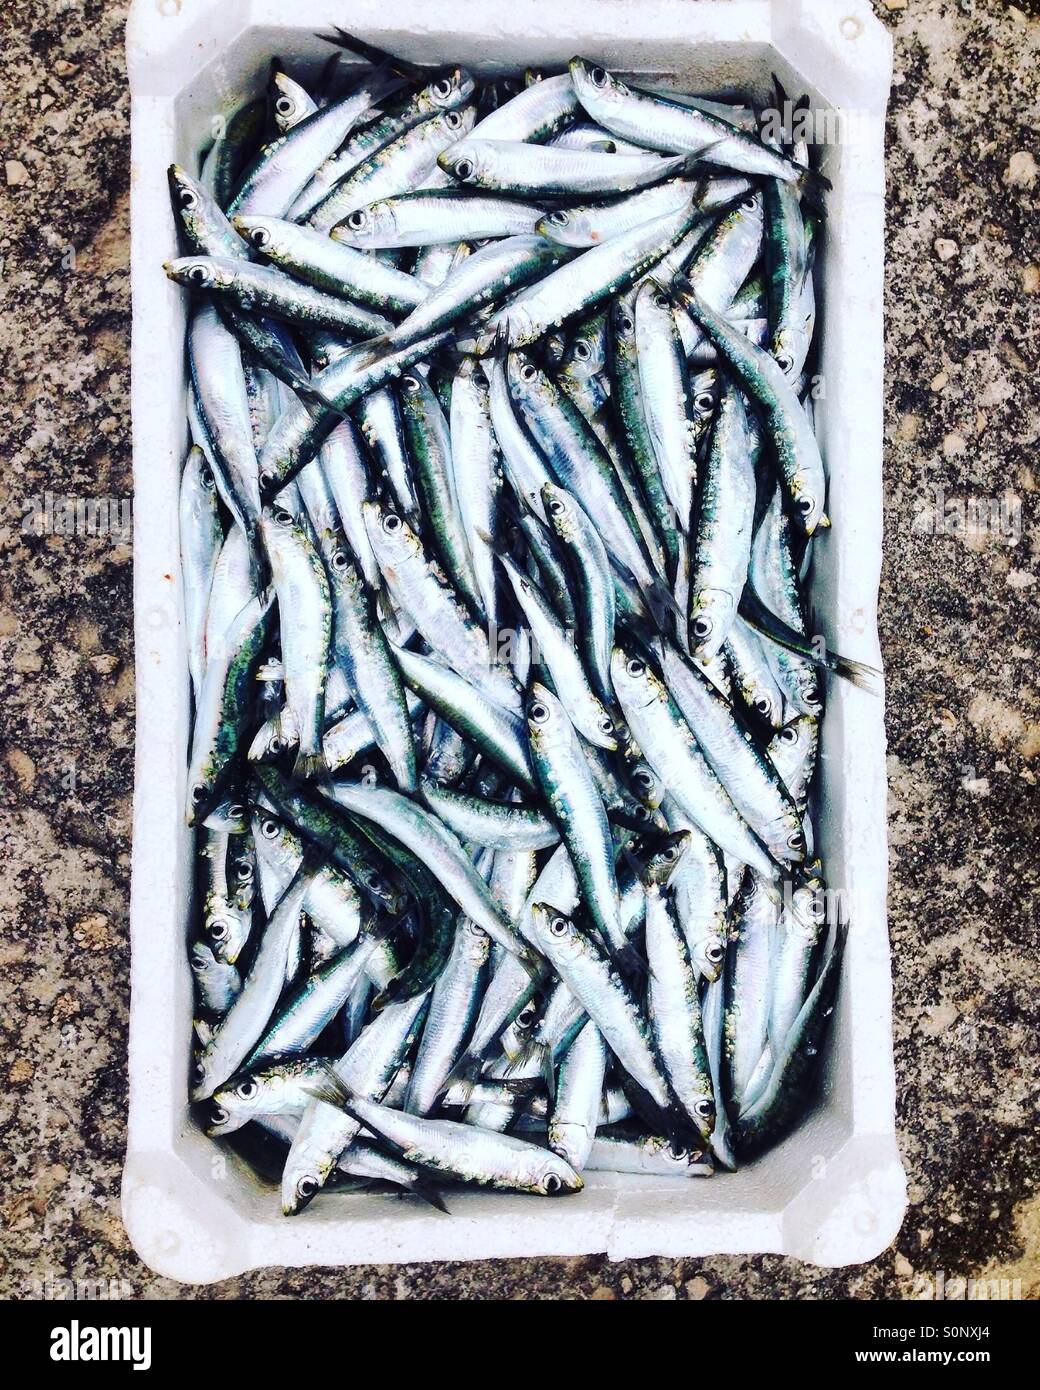 Sardine pesce nel contenitore Foto Stock